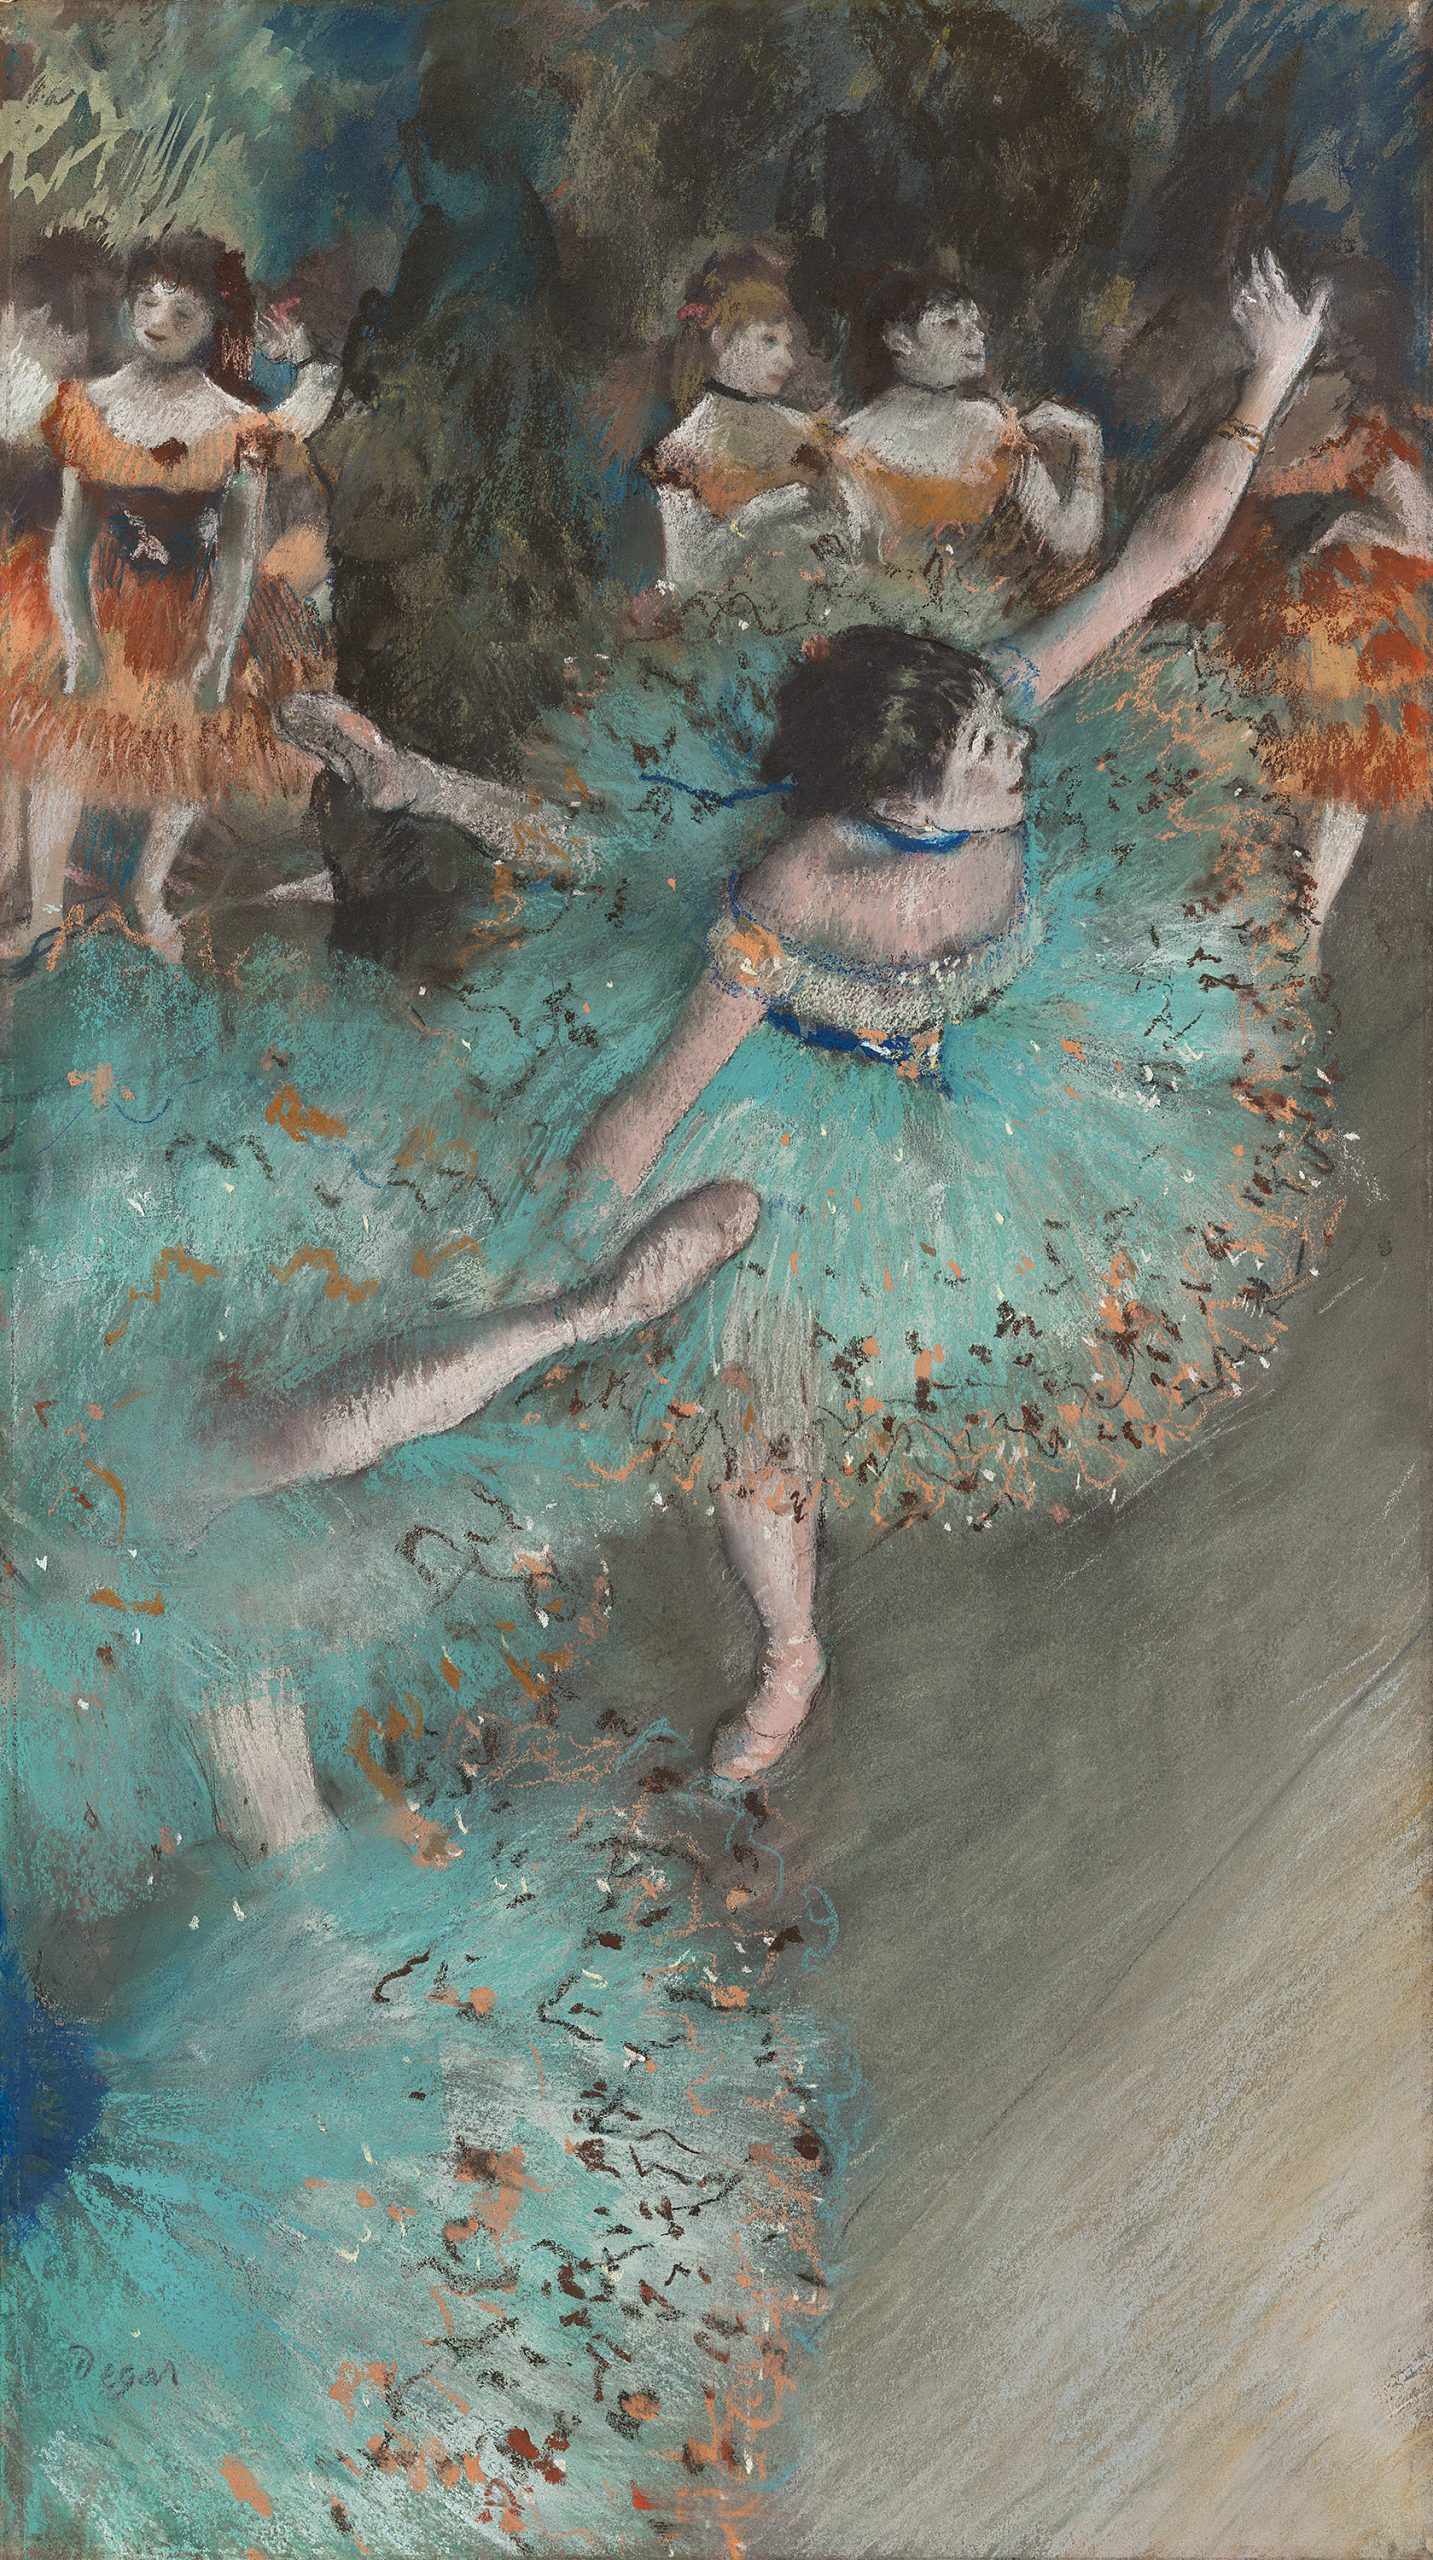 DEGAS, Edgar_Bailarina basculando (Bailarina verde), 1877-1879_515 (1971.2)